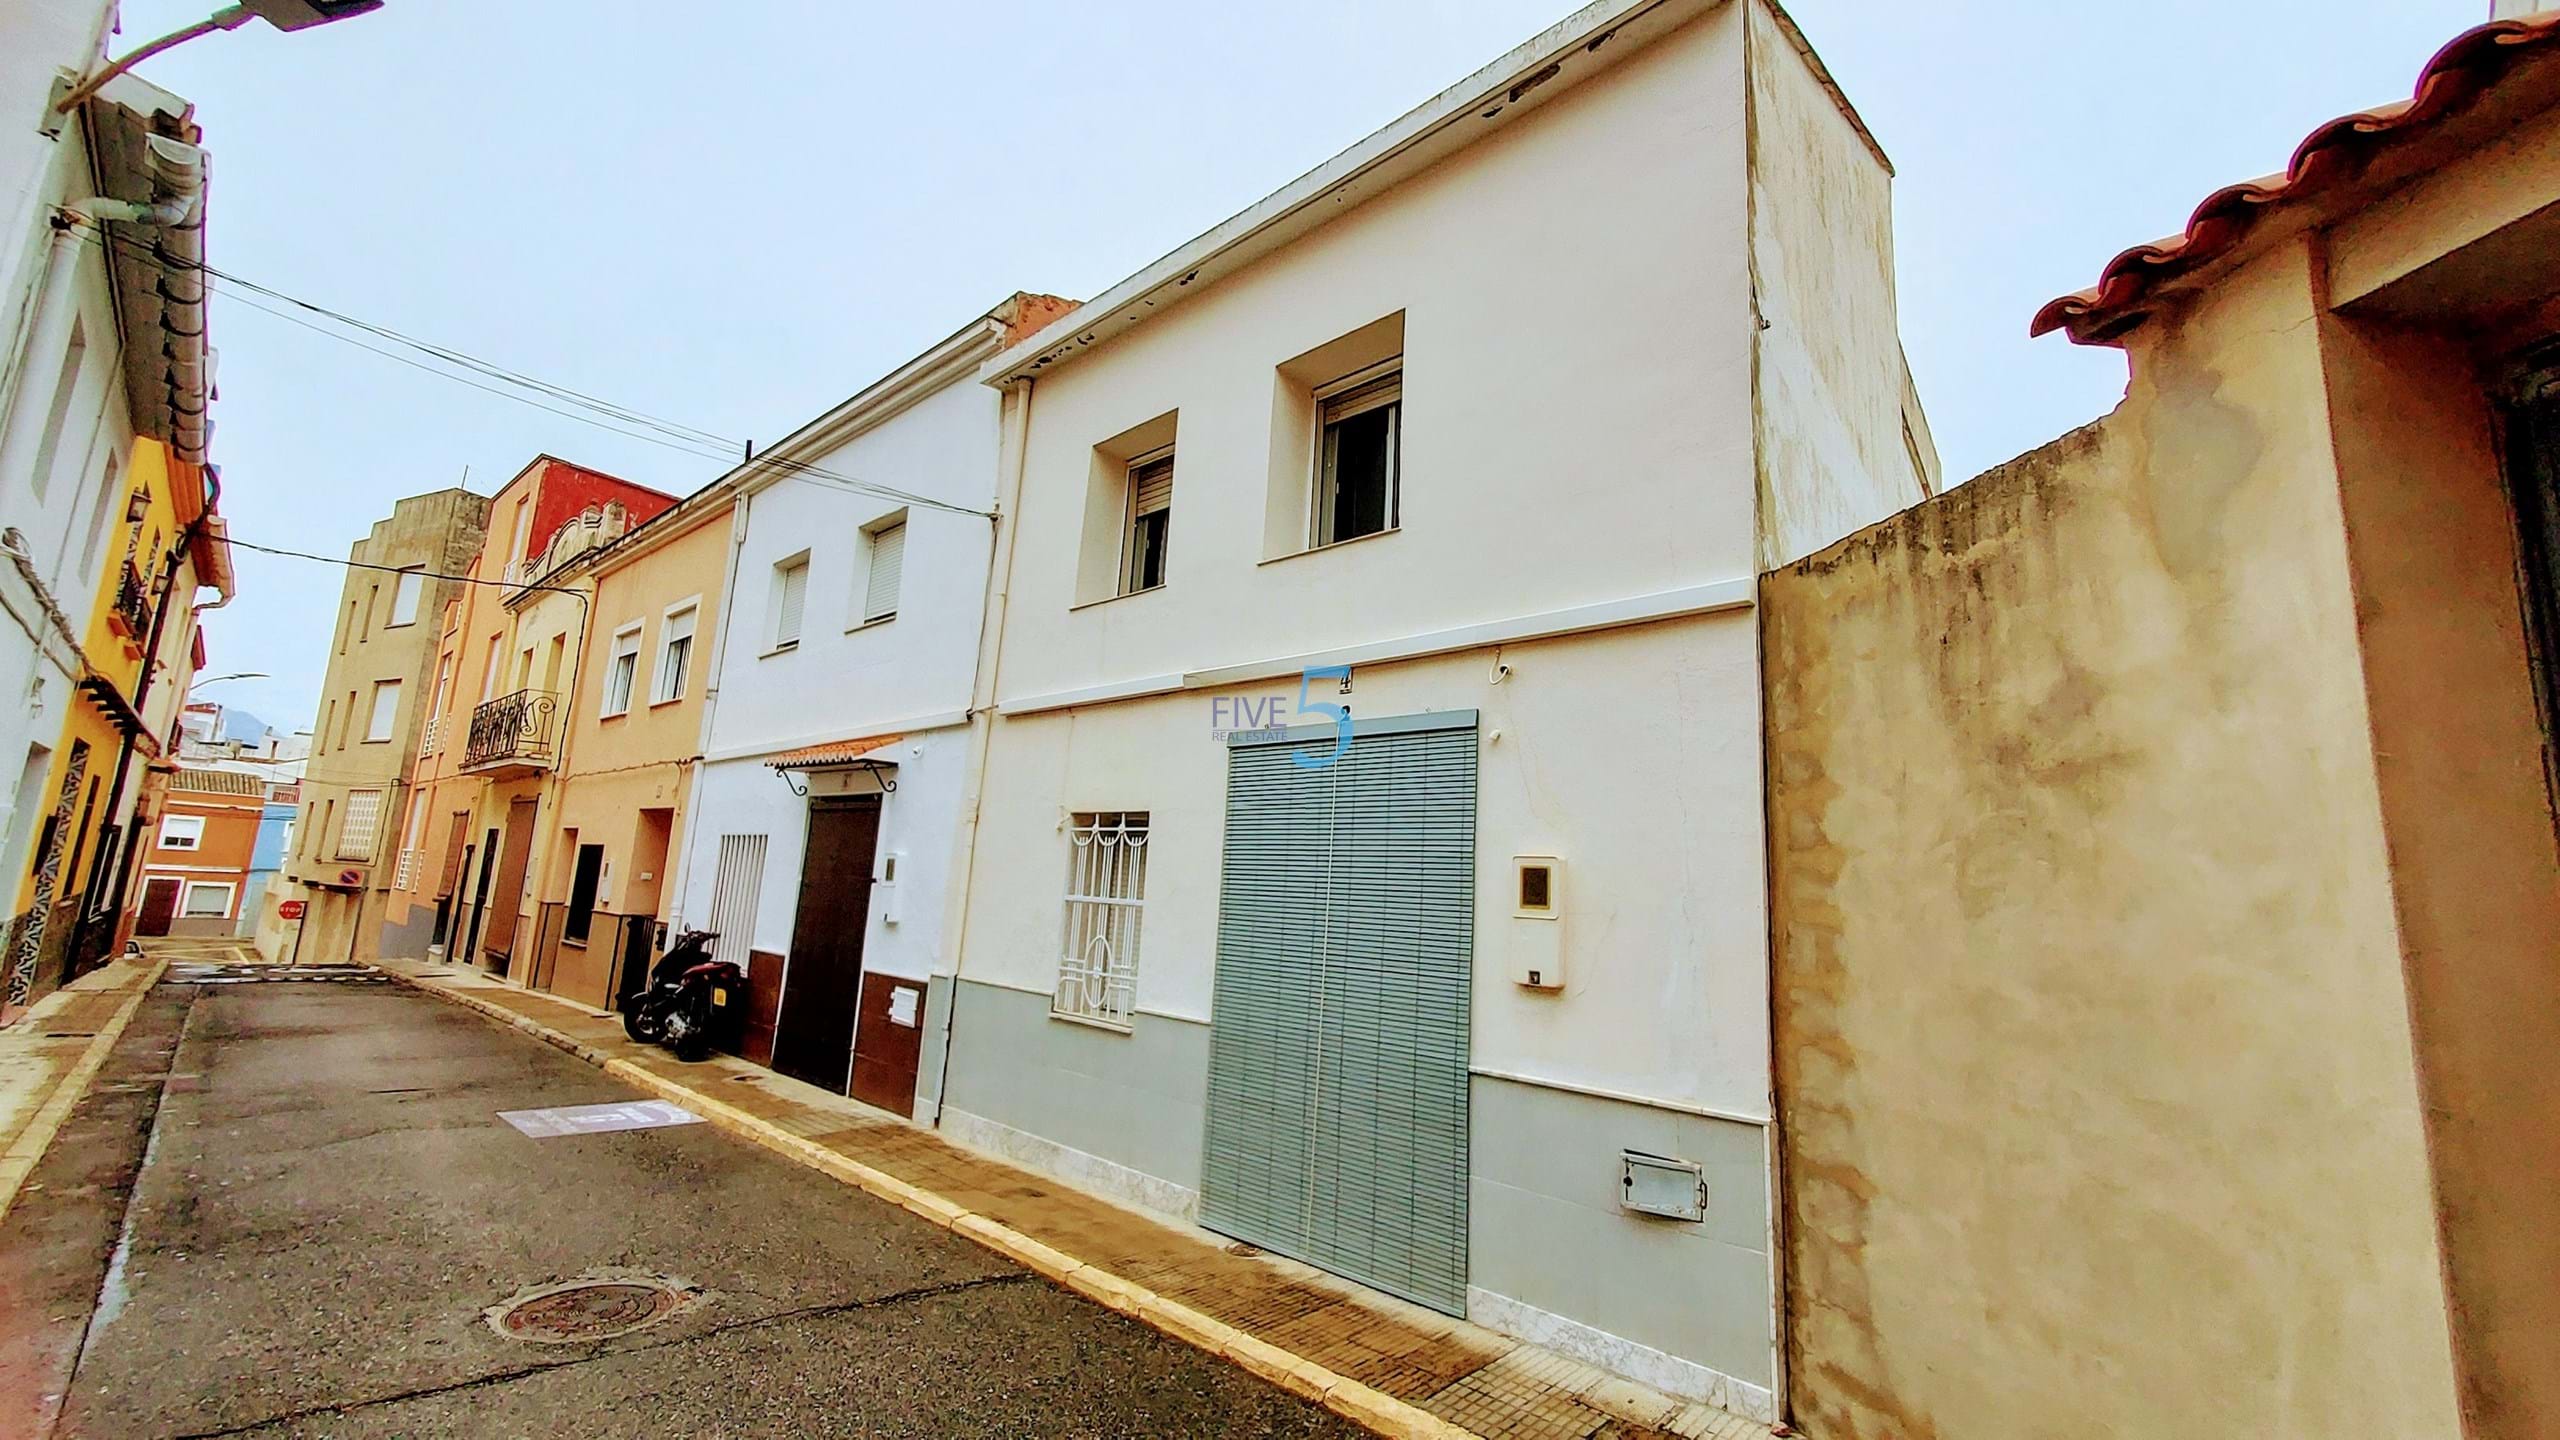 Townhouse for sale in Tabernes del la Valldigna 16